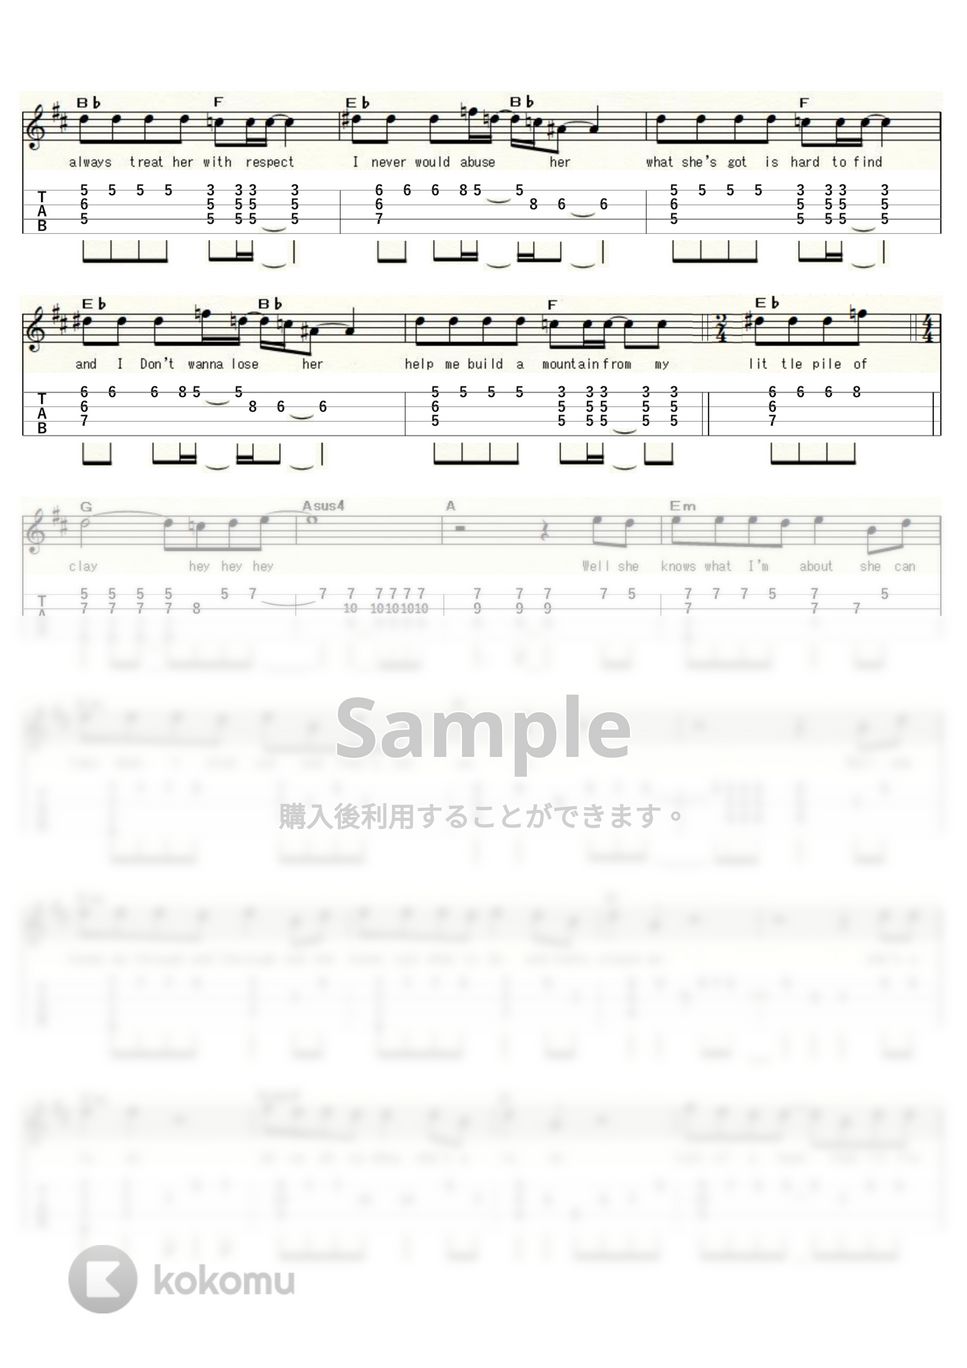 トム・ジョーンズ - SHE'S A LADY (ｳｸﾚﾚｿﾛ/Low-G/中級) by ukulelepapa